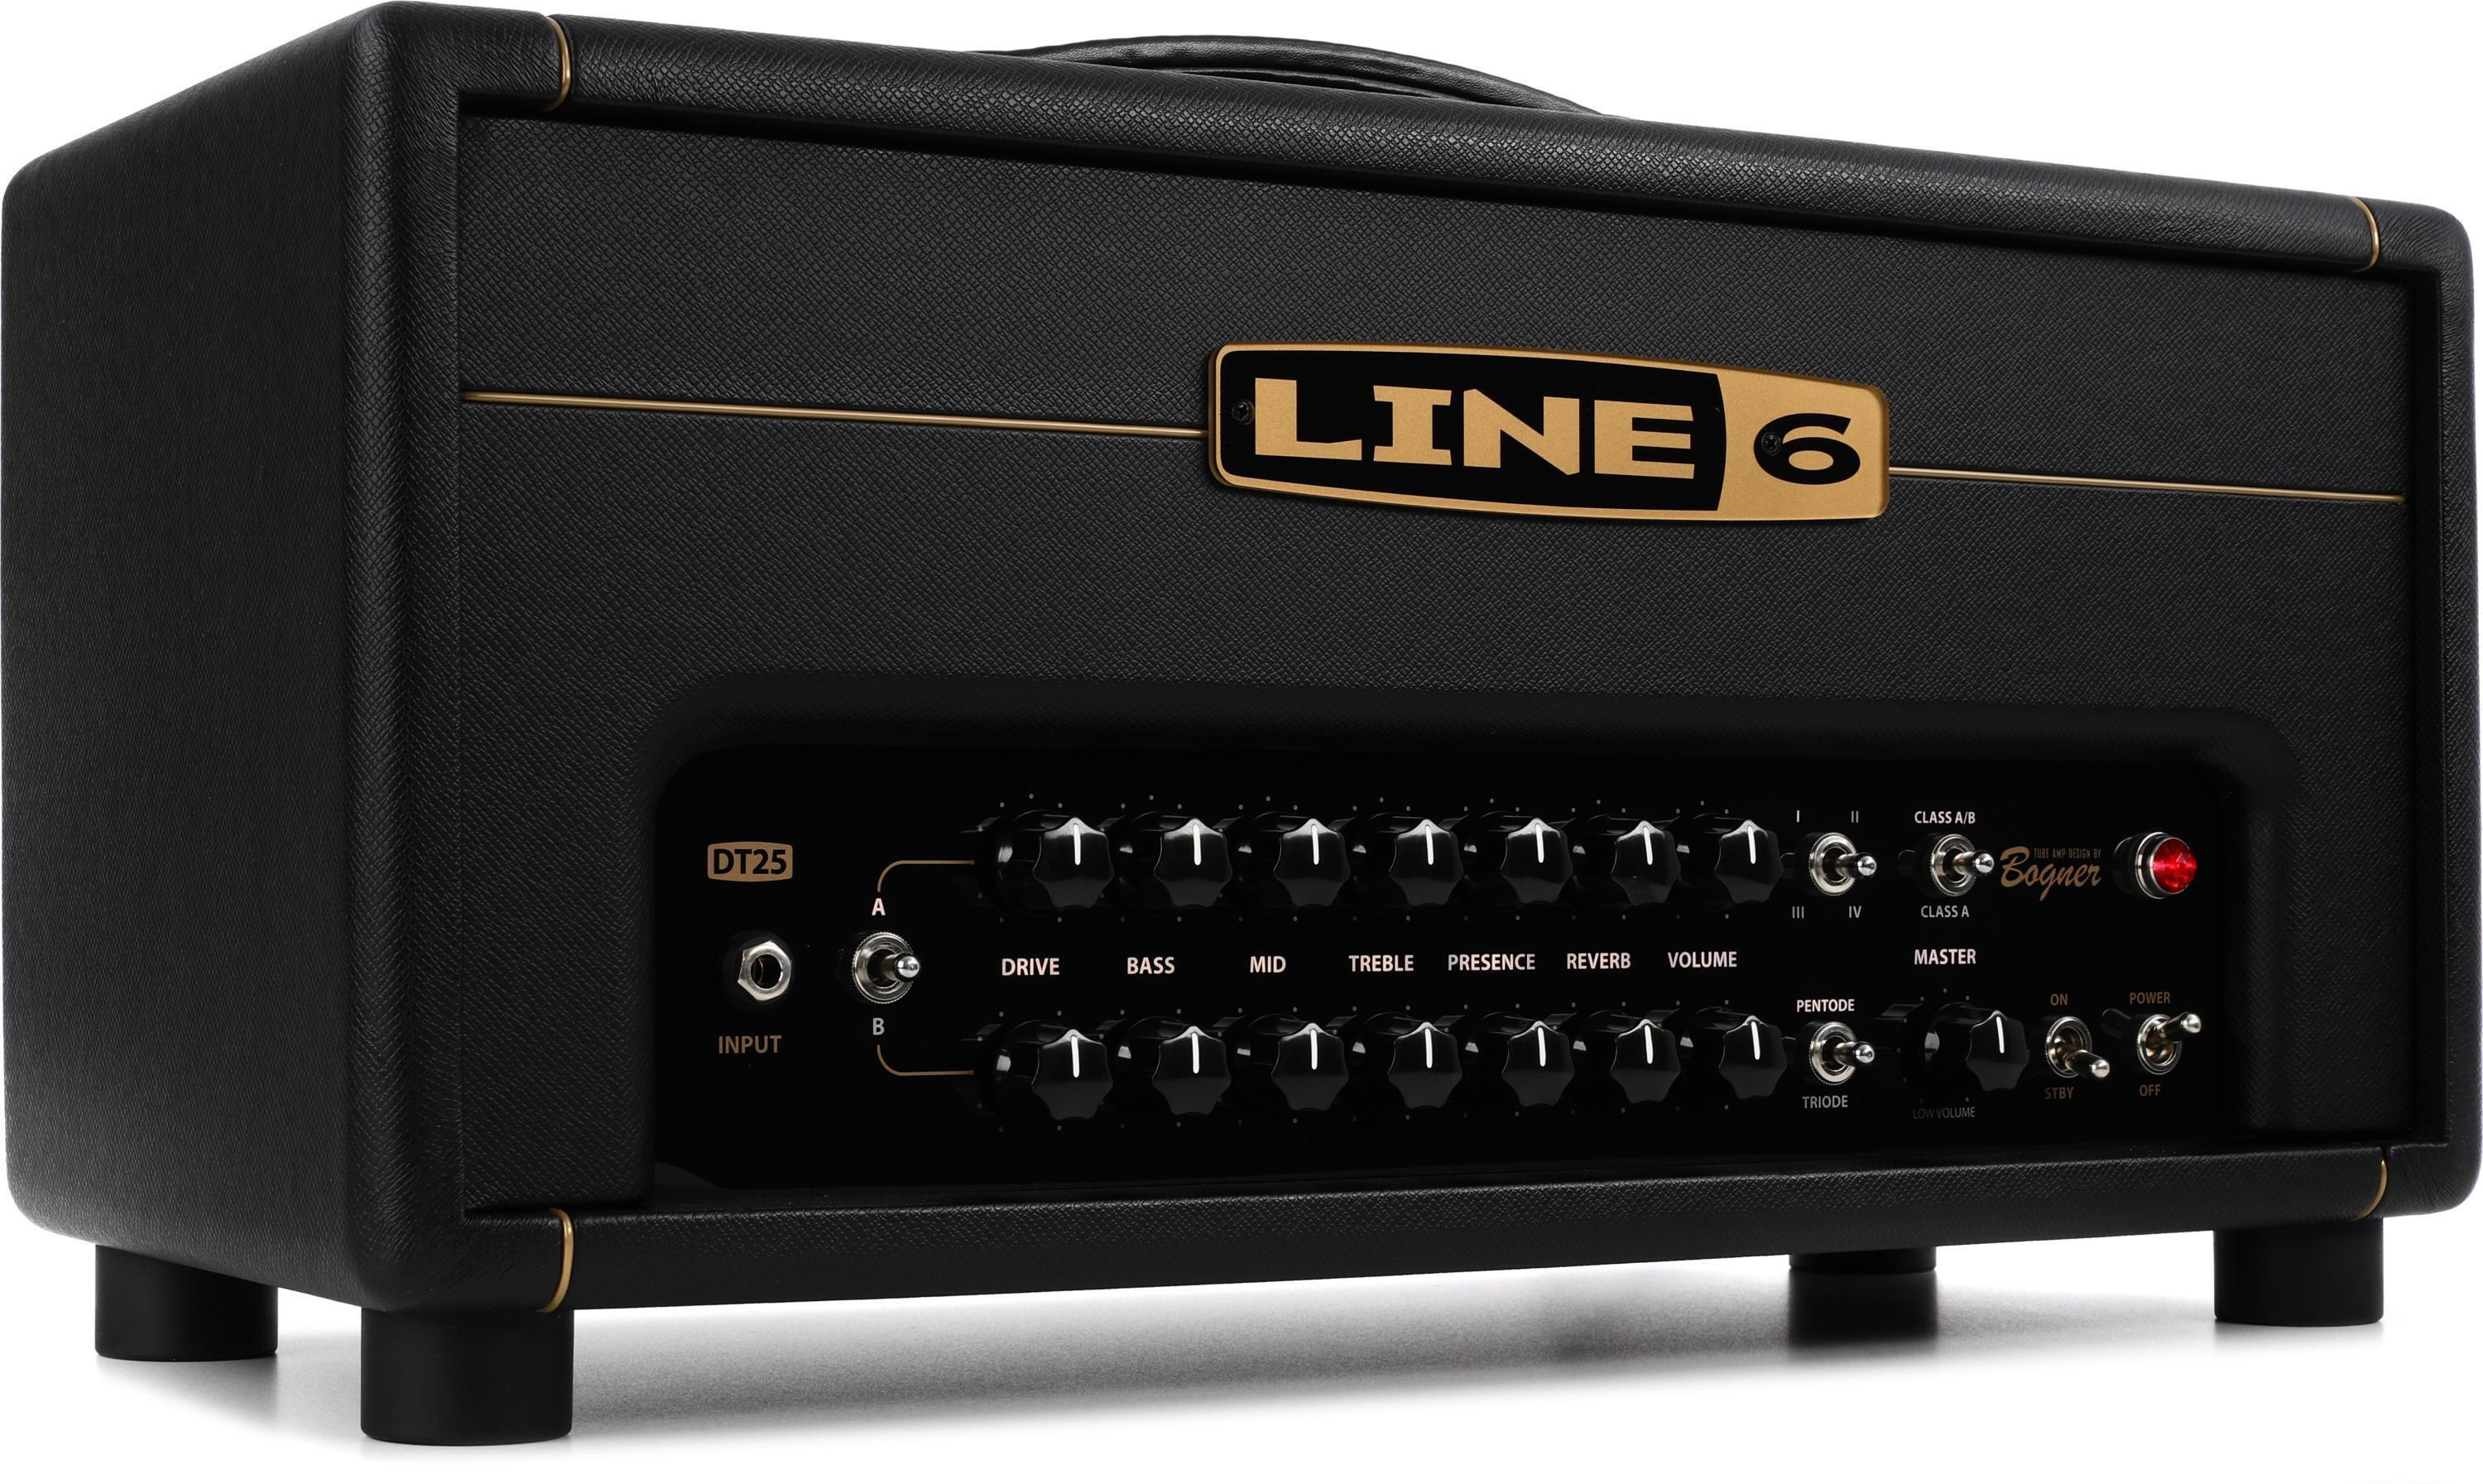 Line 6 DT25 HD 25-watt Modeling Amp Head